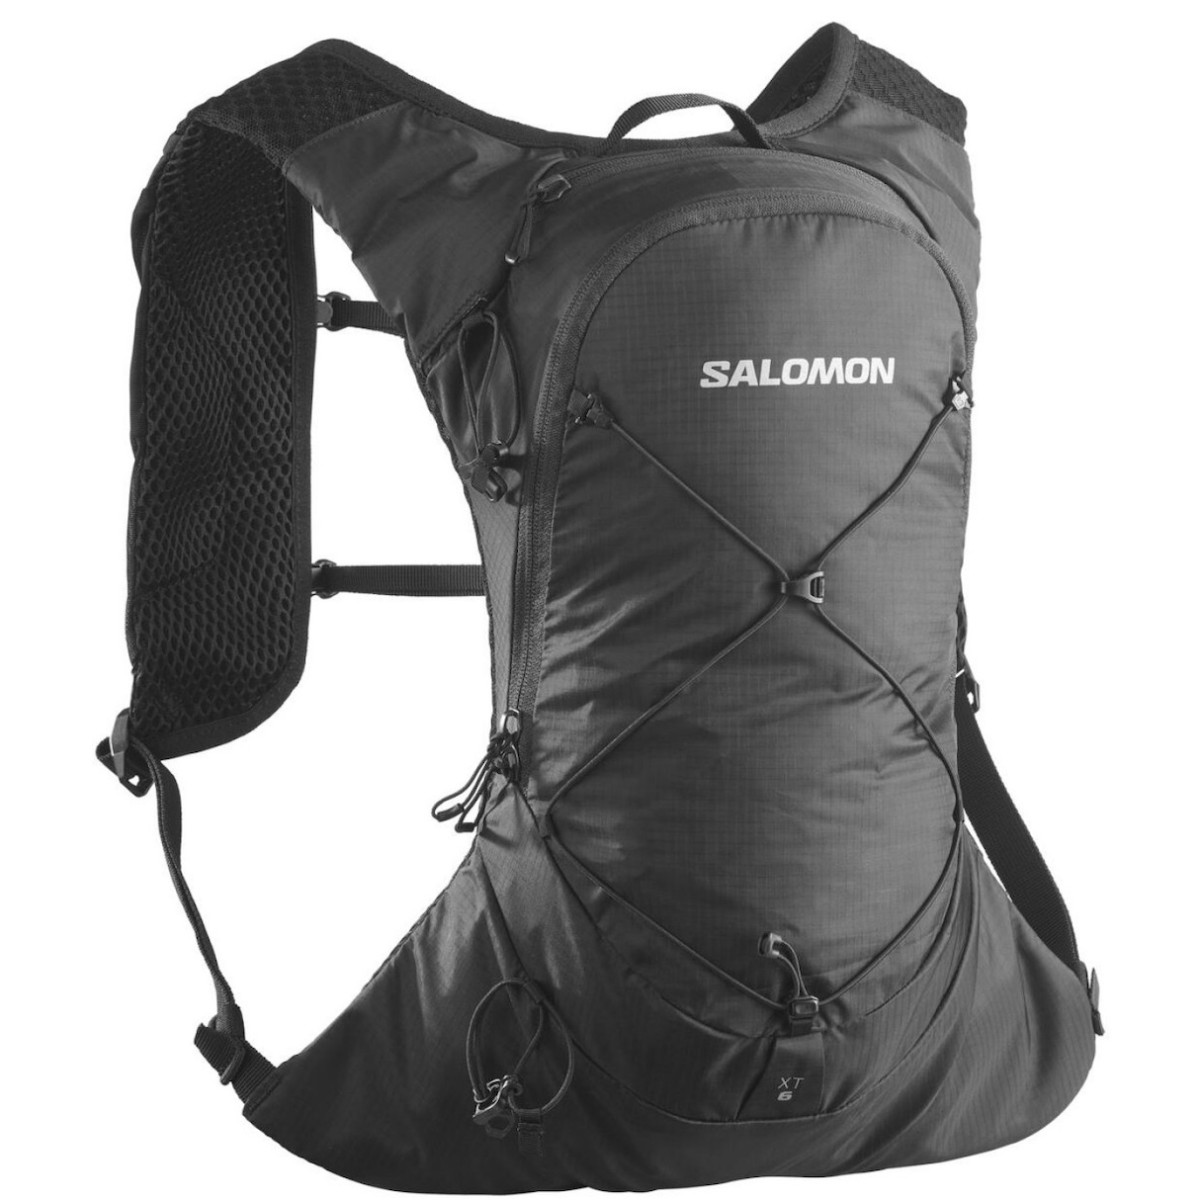 SALOMON XT 6 backpack - black